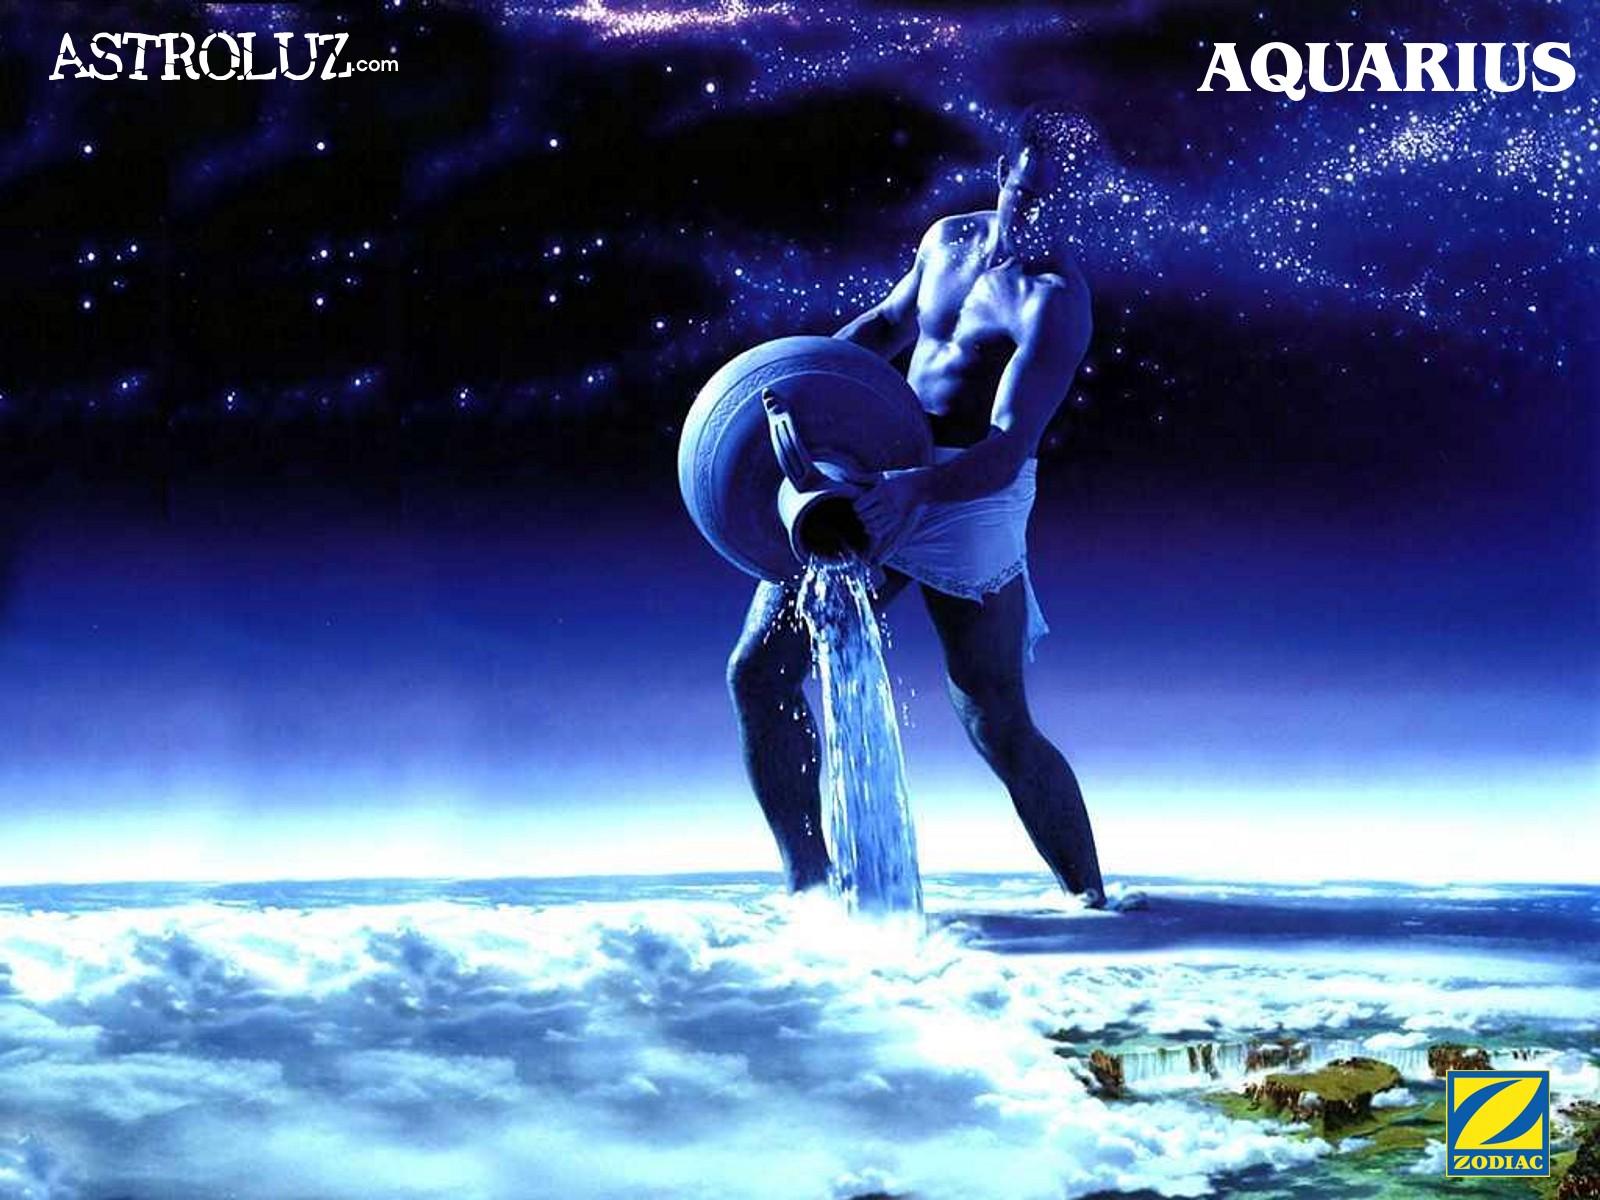 Aquarius image Aquarius HD wallpaper and background photo